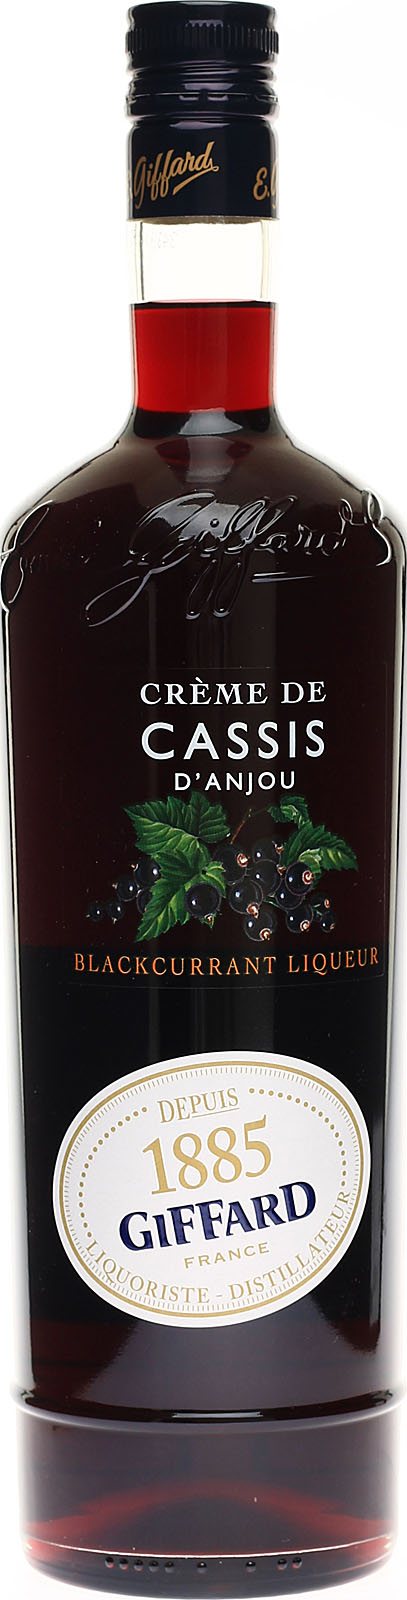 Crème de Cassis d'Anjou